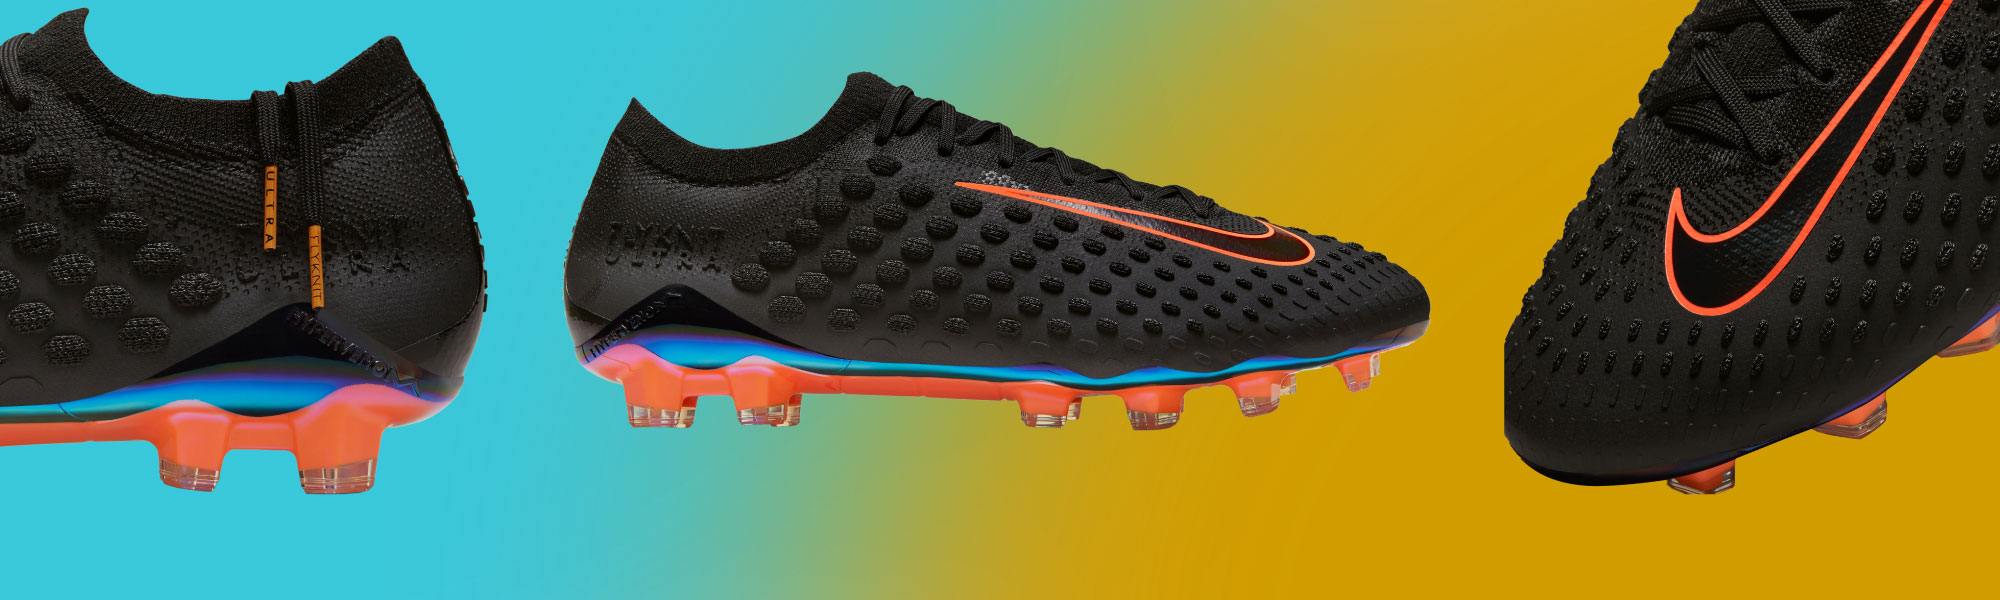 Hizo un contrato Clasificar Cerebro Nike Flyknit Ultra Soccer Shoes - SoccerPro